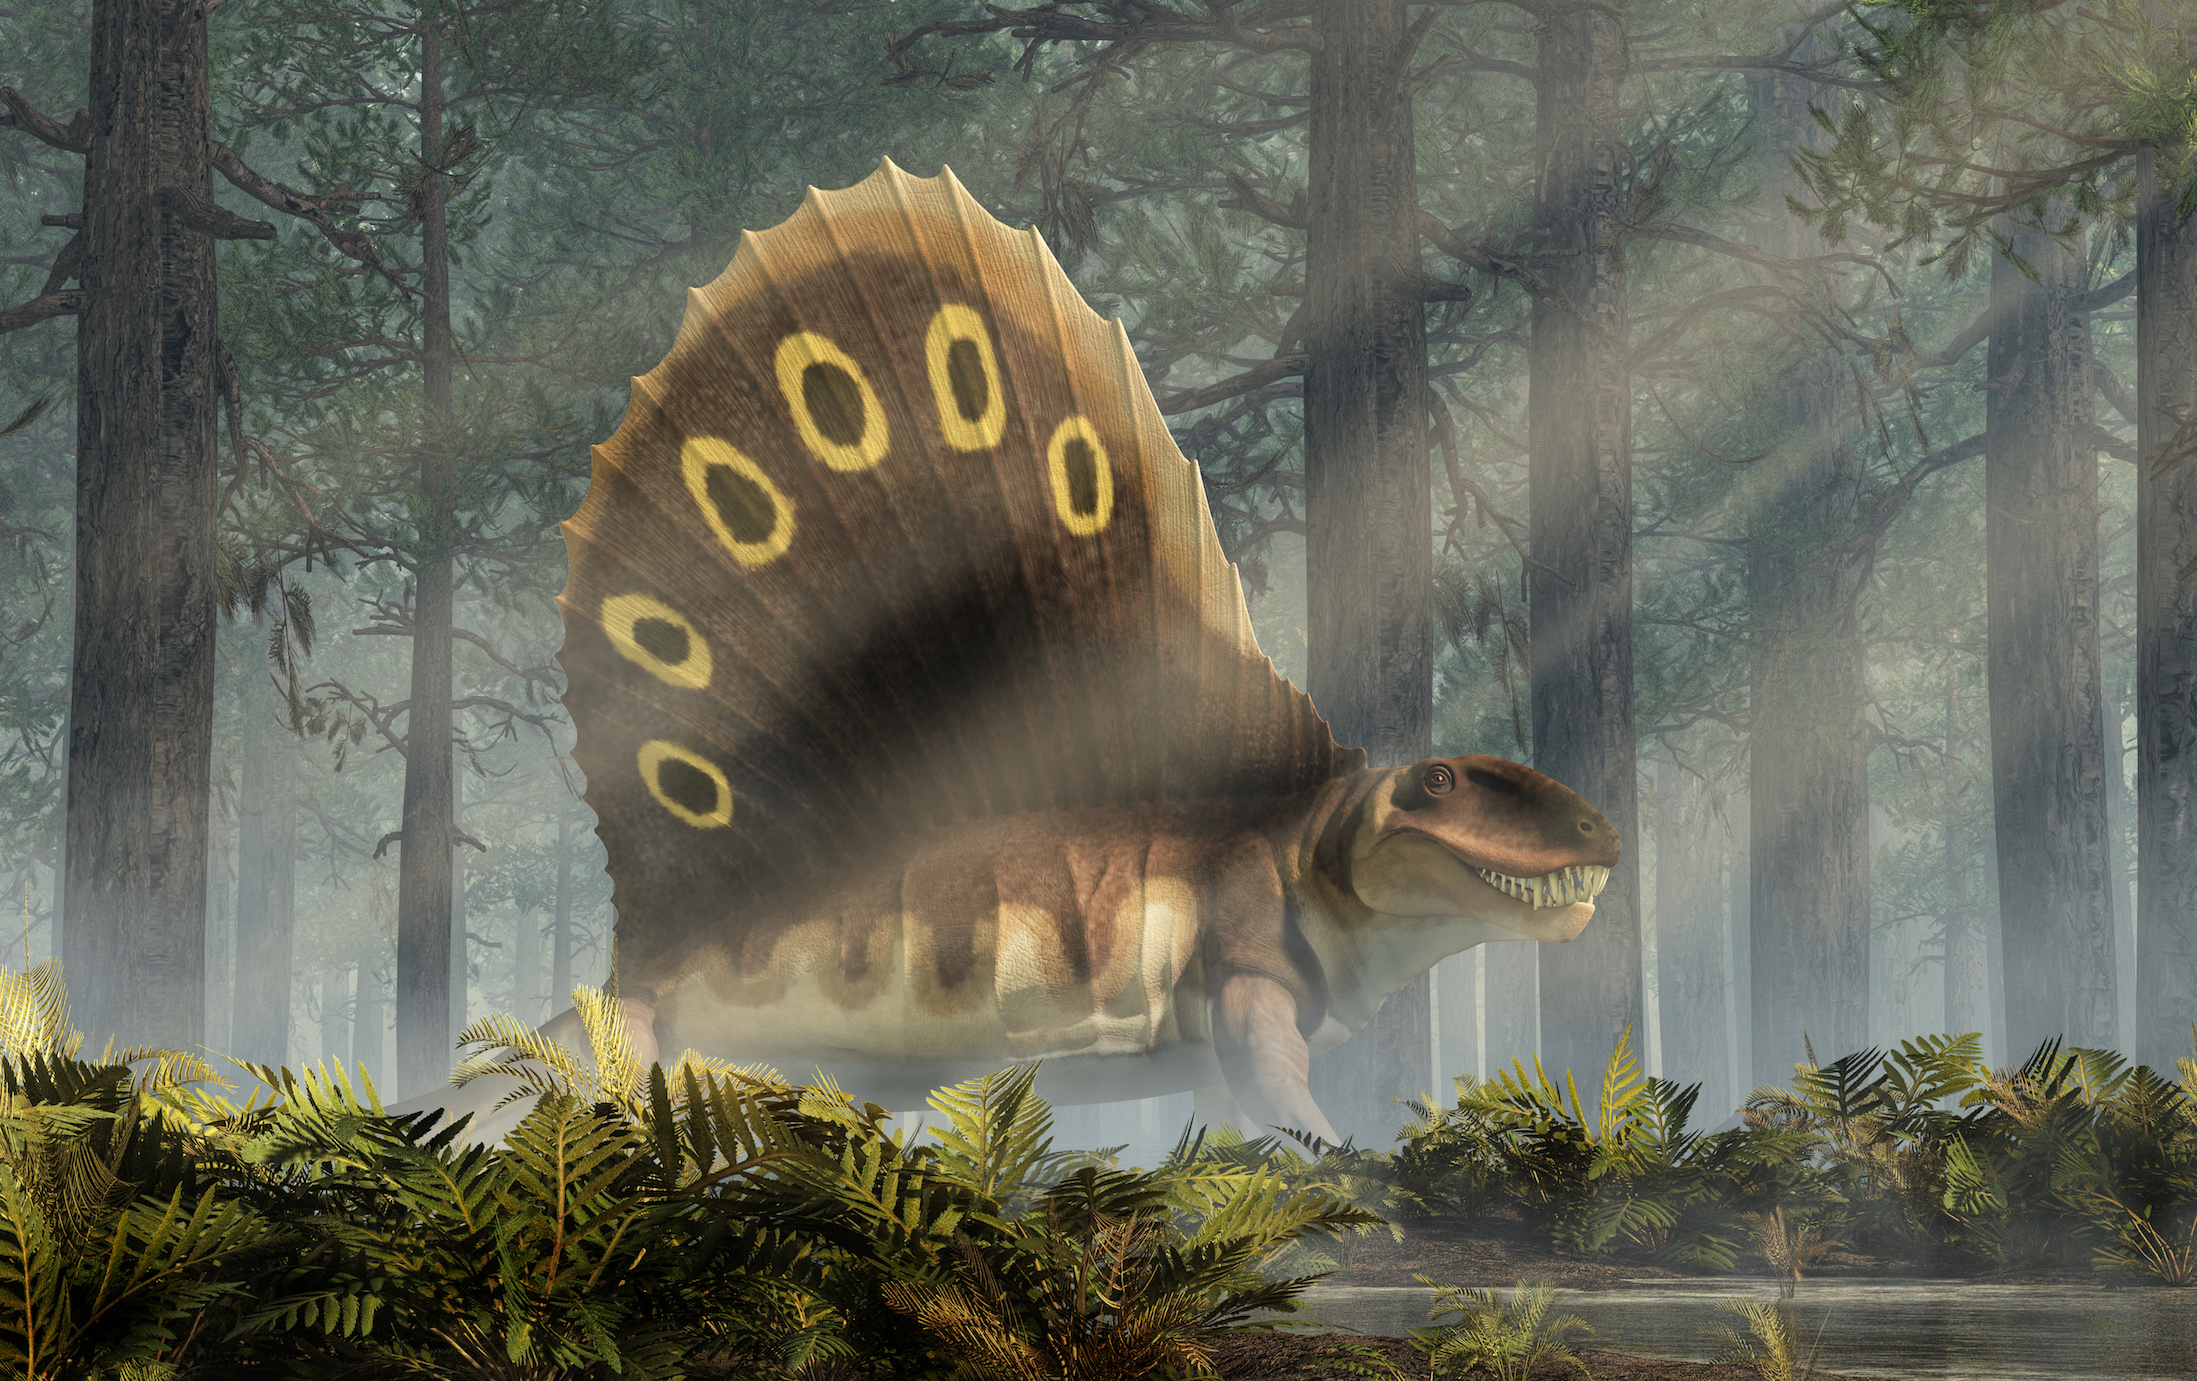 Le monde étrange du Permien n'était pas encore celui des dinosaures. Les paléontologues viennent de retrouver des fragments de peau de reptile datant de cette époque lontaine. © Daniel Eskridge, Adobe Stock